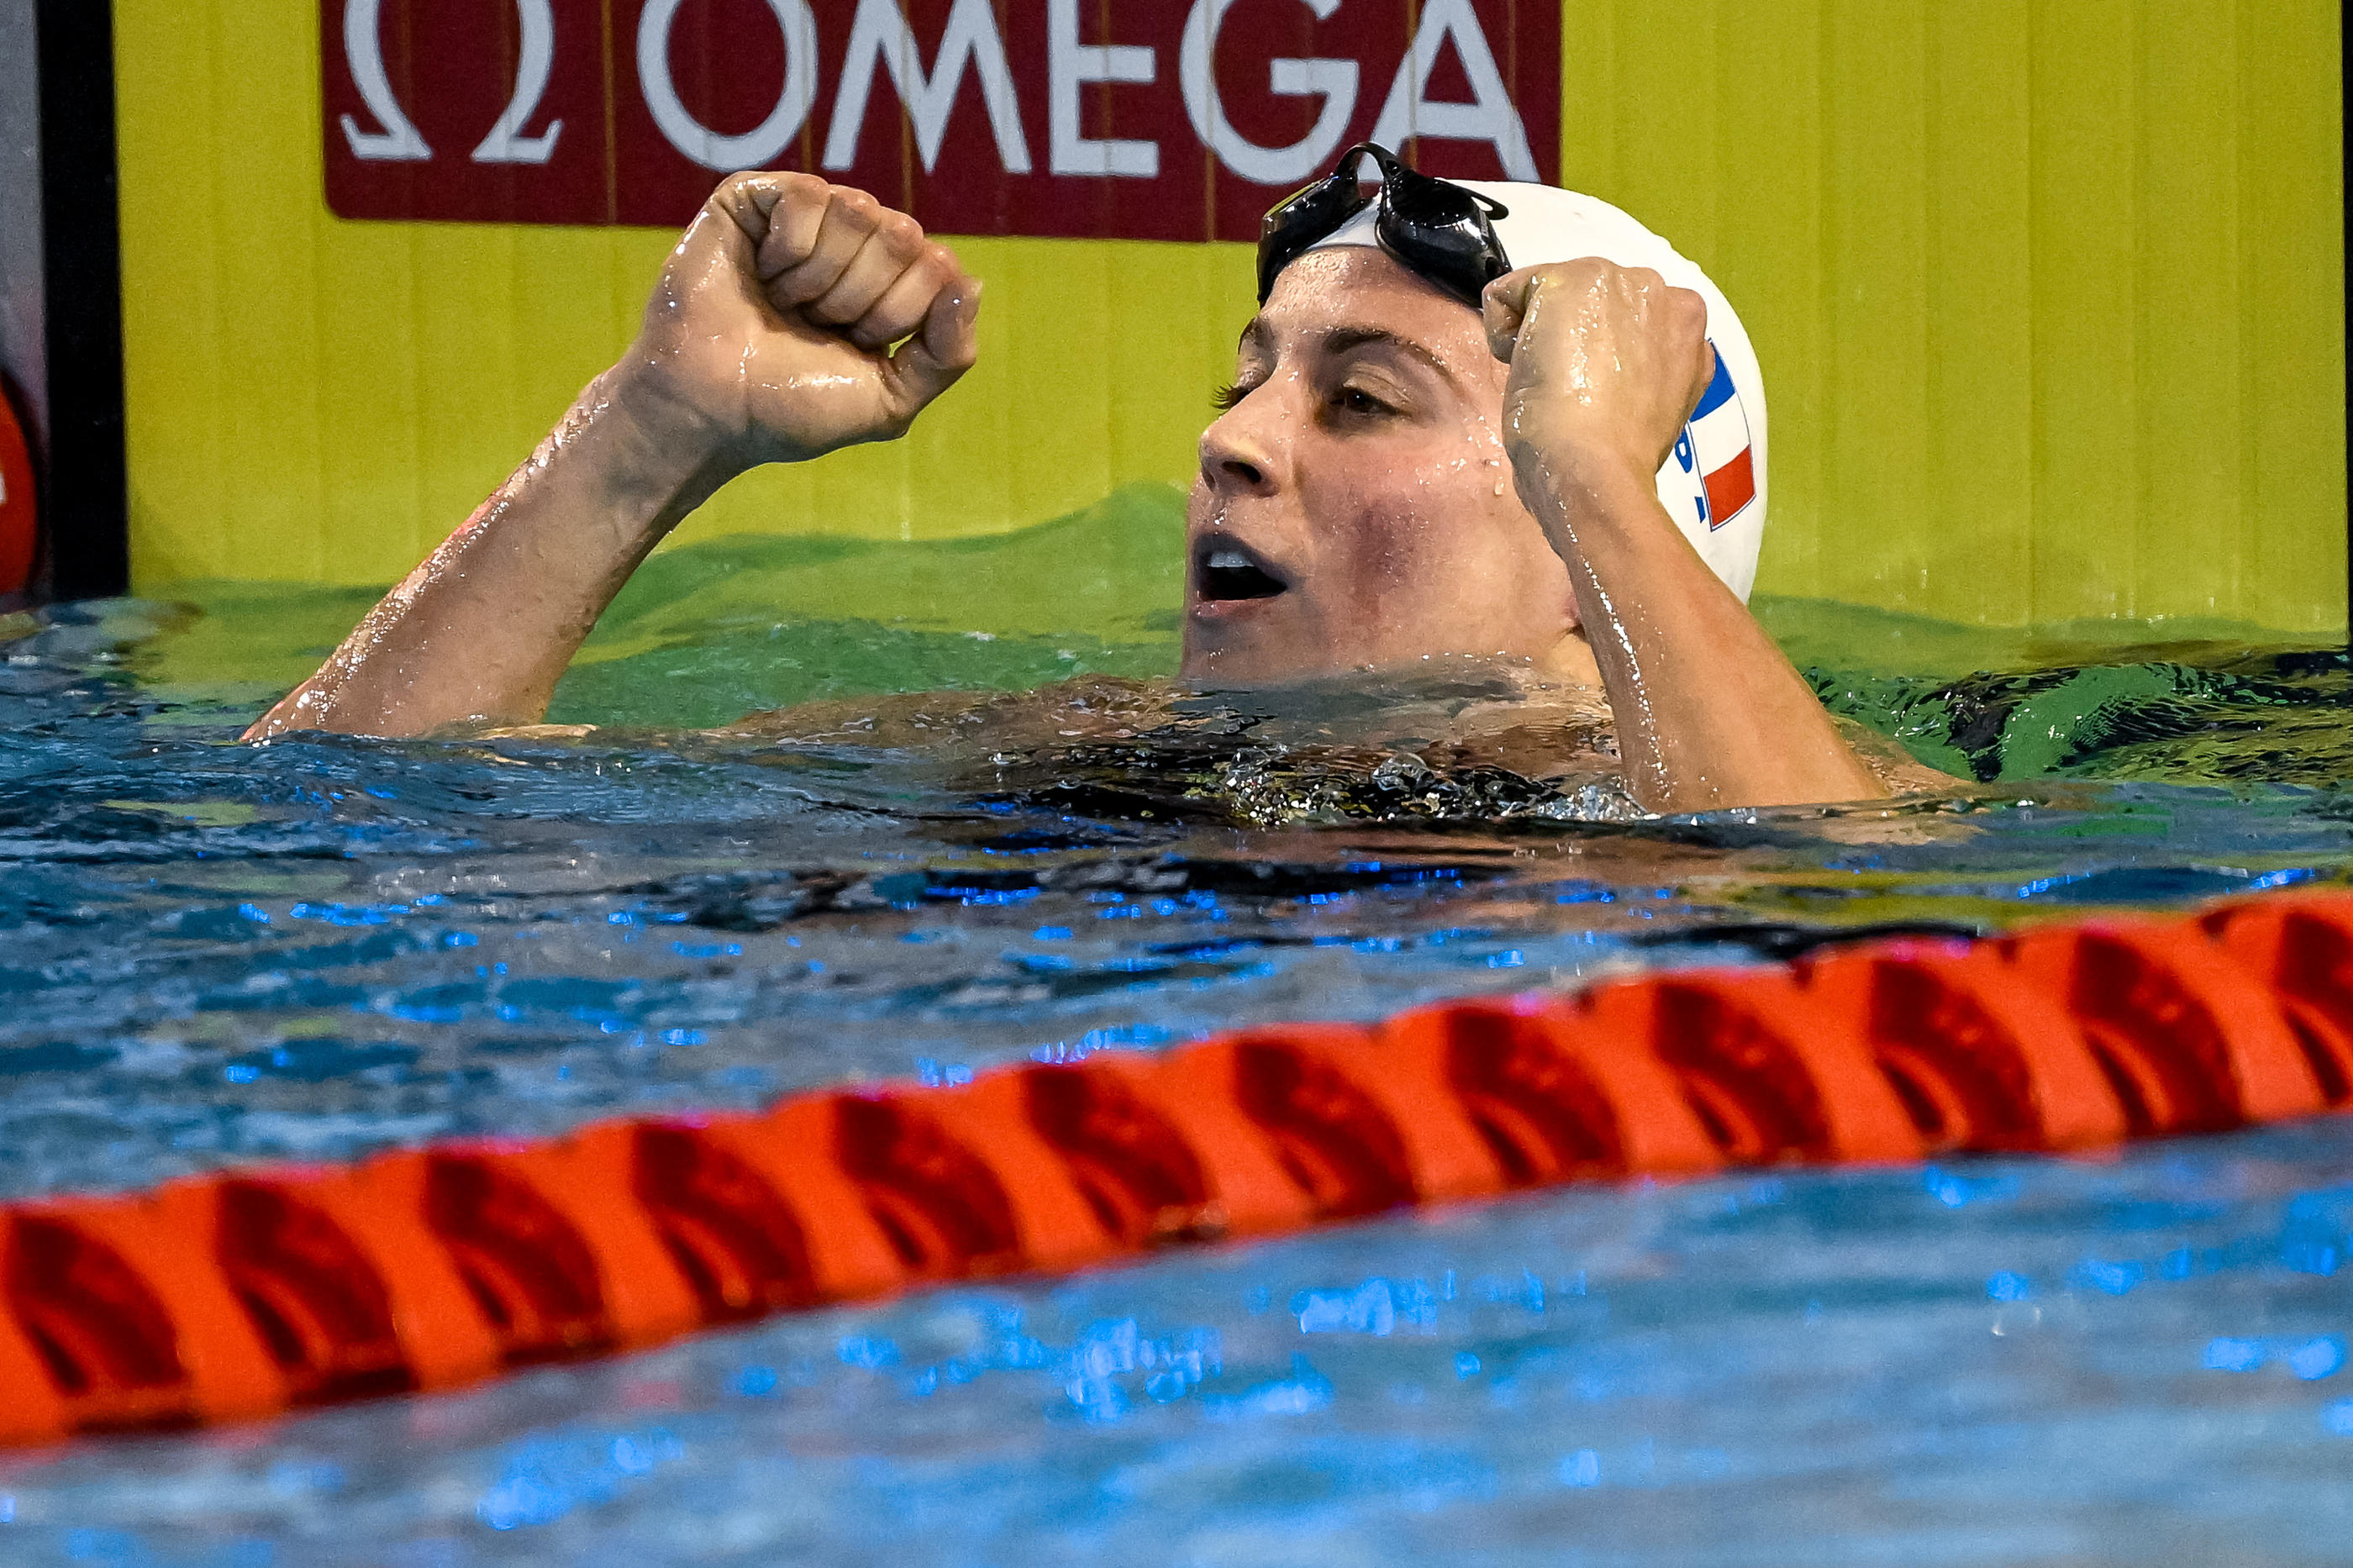 Après l'or sur 100 m 4 nages, Charlotte Bonnet a décroché la médaille d'argent sur le 200 m 4 nages lors des championnats d'Europe en petit bassin. Abaca/Icon sport